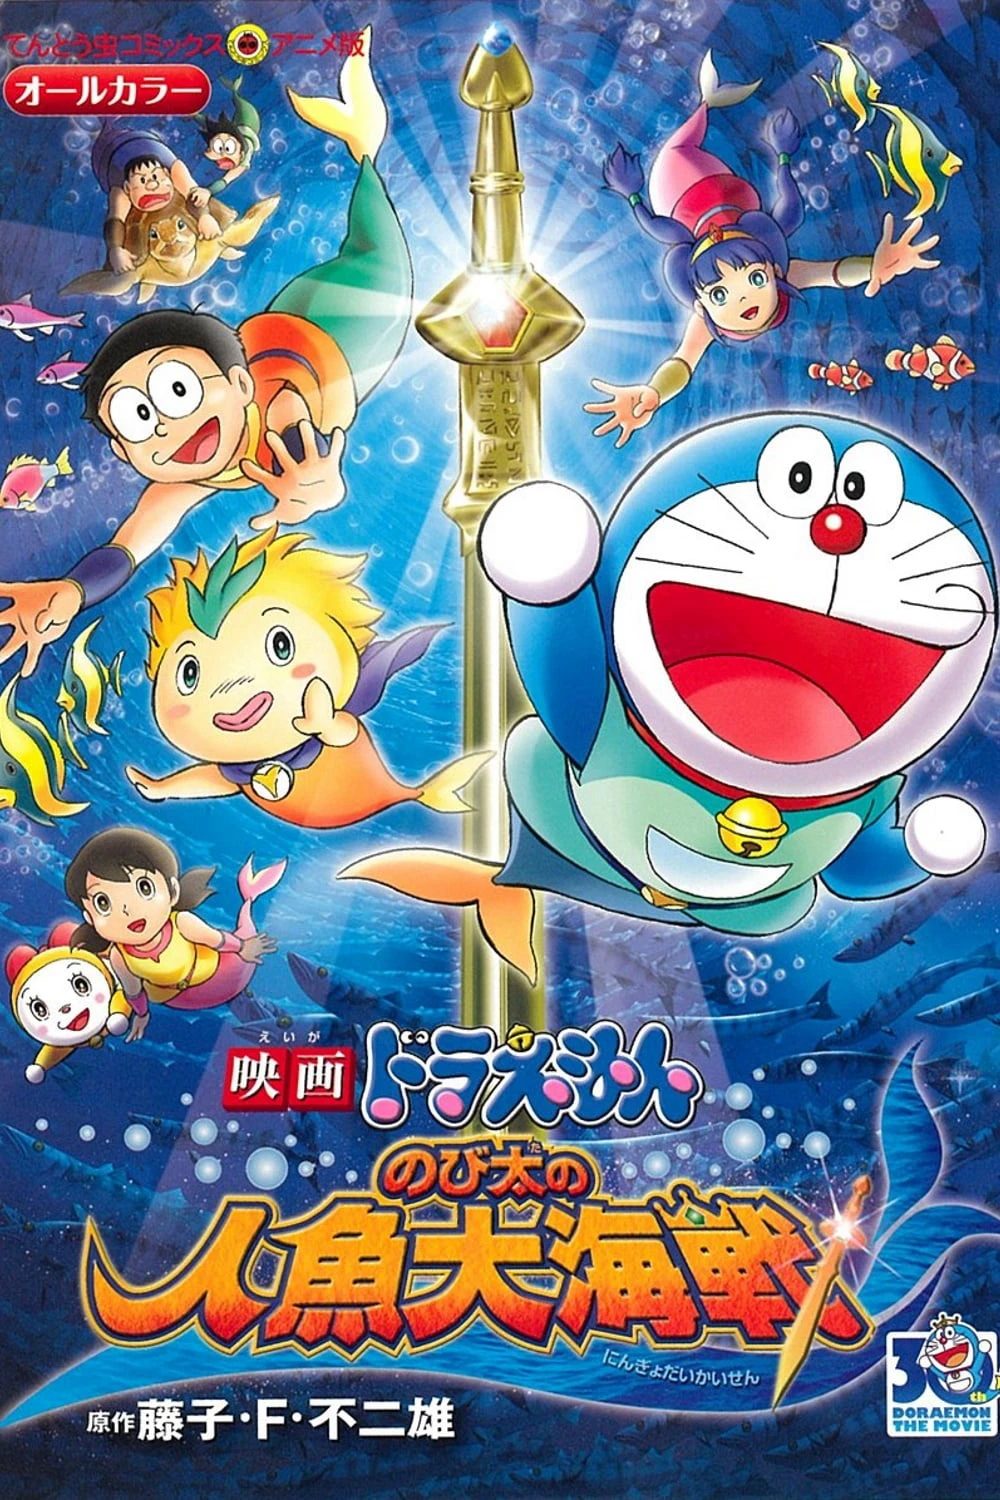 Phim Doraemon: Nobita và Cuộc Đại Thủy Chiến Ở Xứ Sở Người Cá - Doraemon the Movie: Nobita's Mermaid Legend (2010)